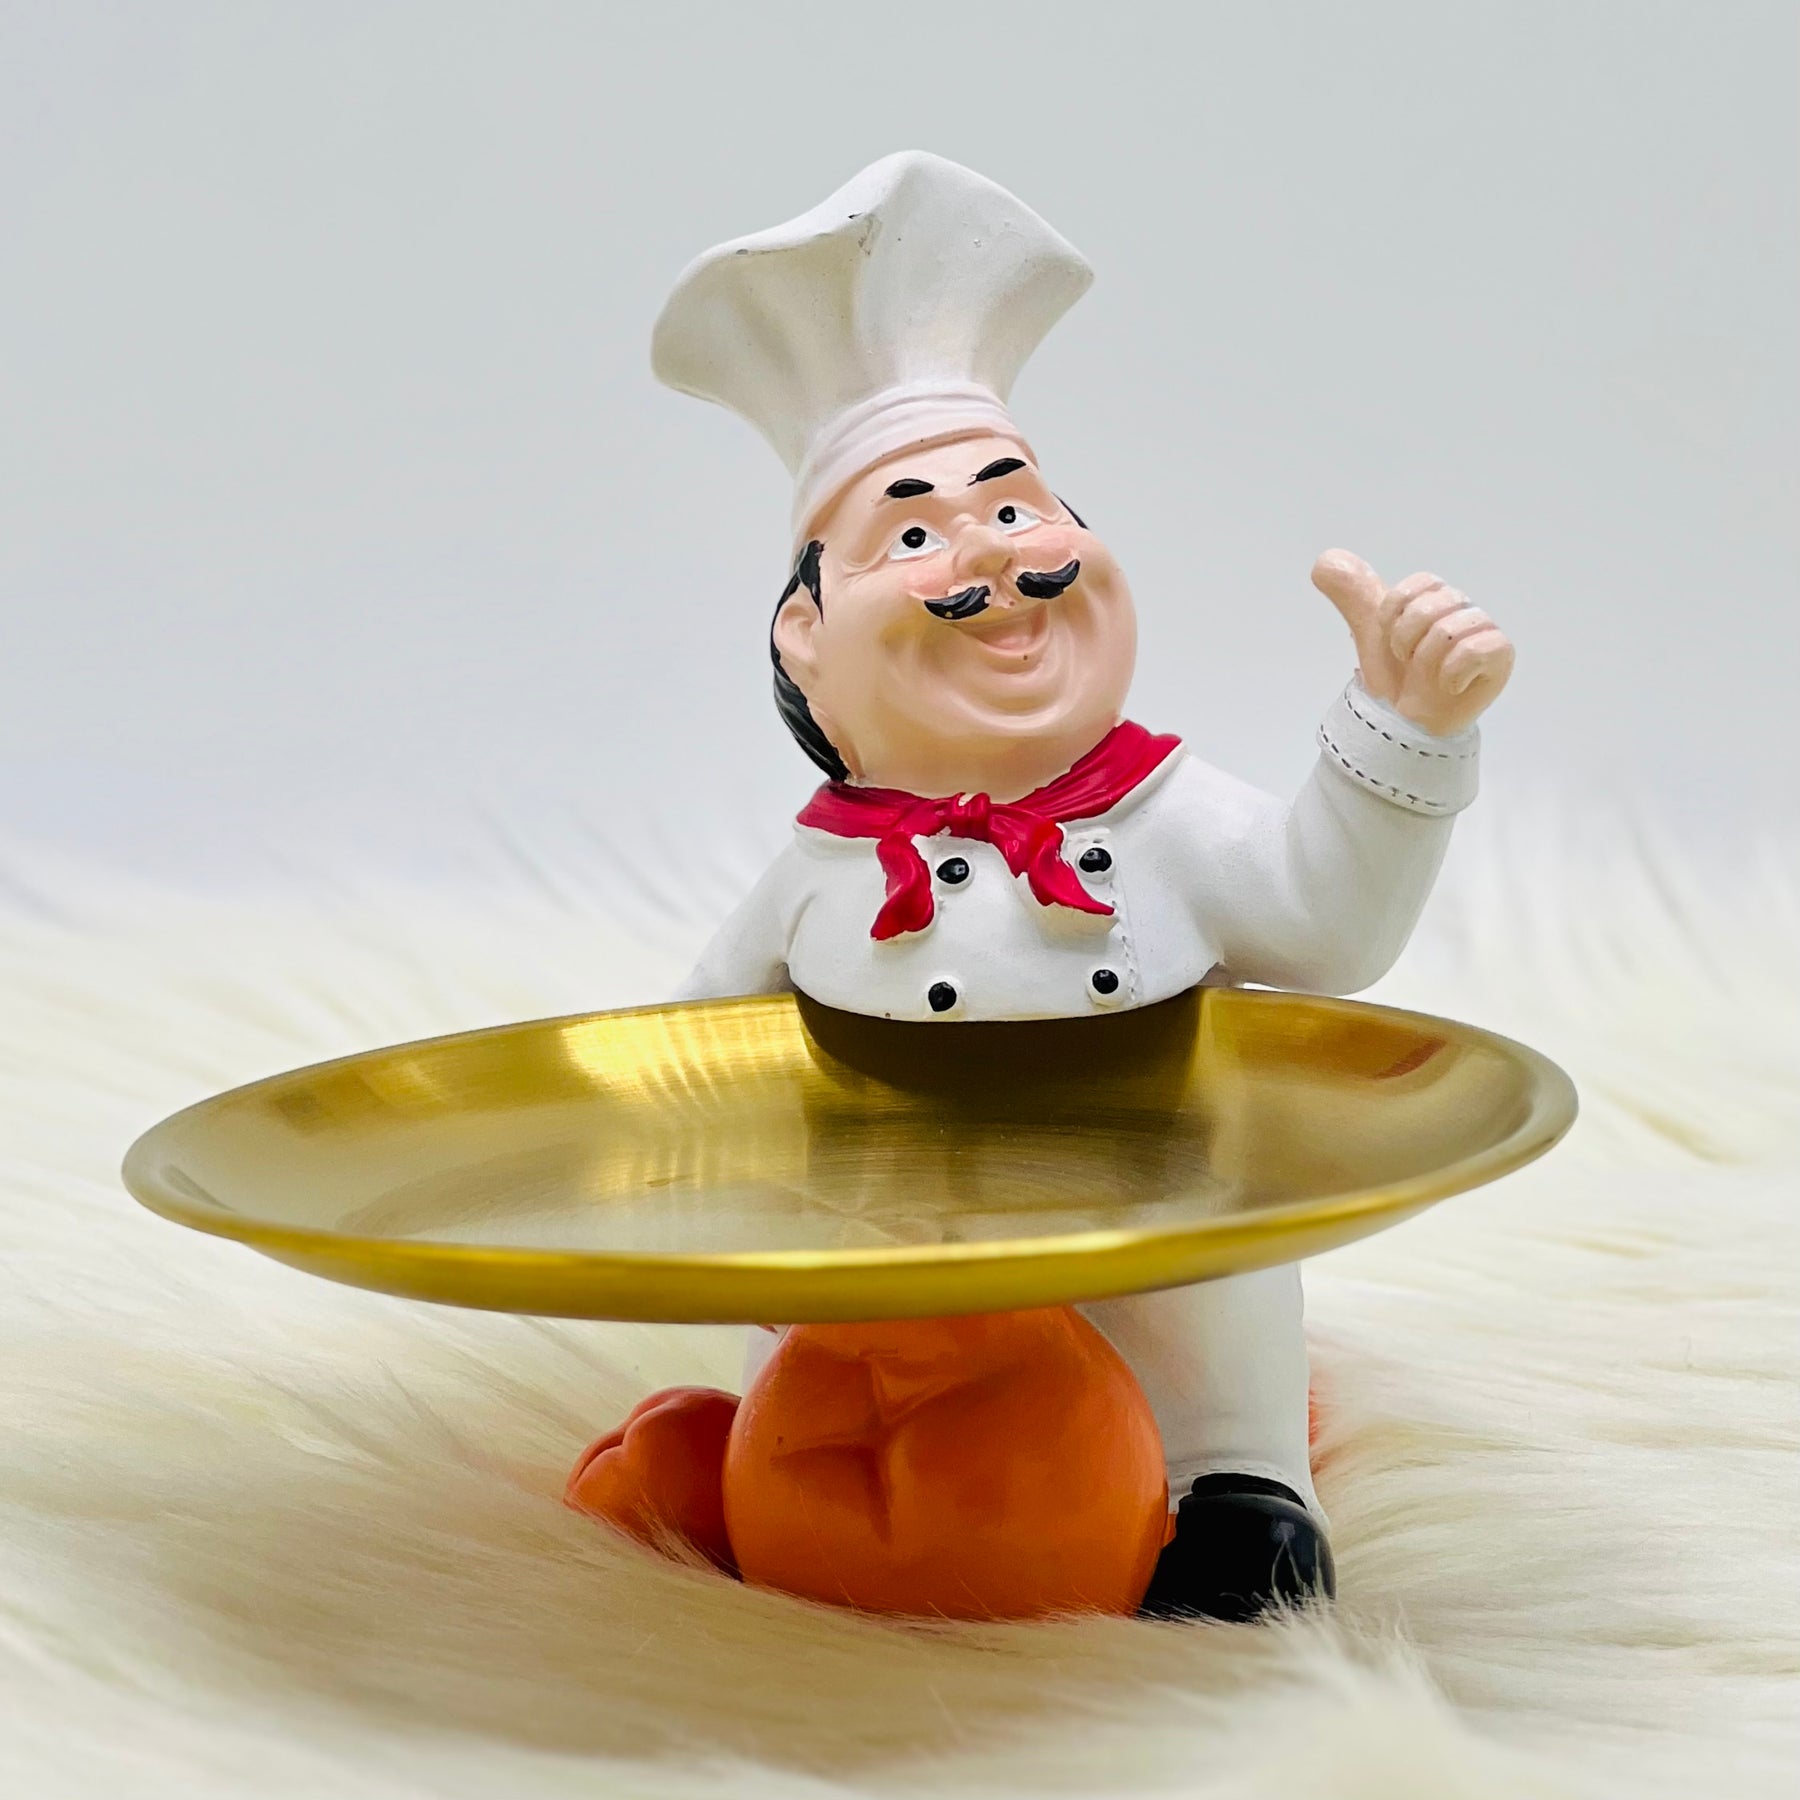 Creative kitchen Chef Character